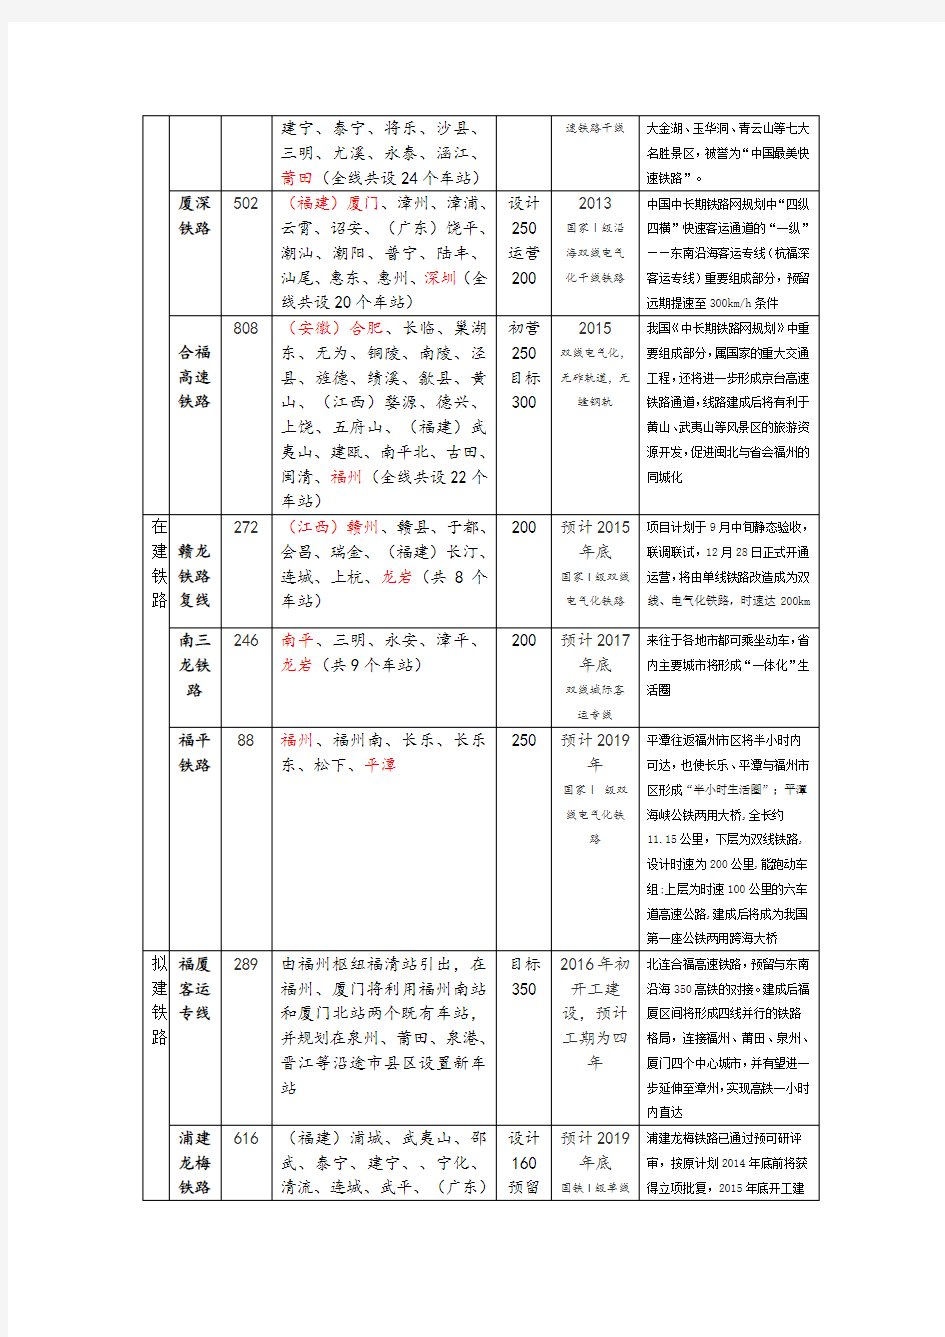 福建省铁路网概况(2015.8)